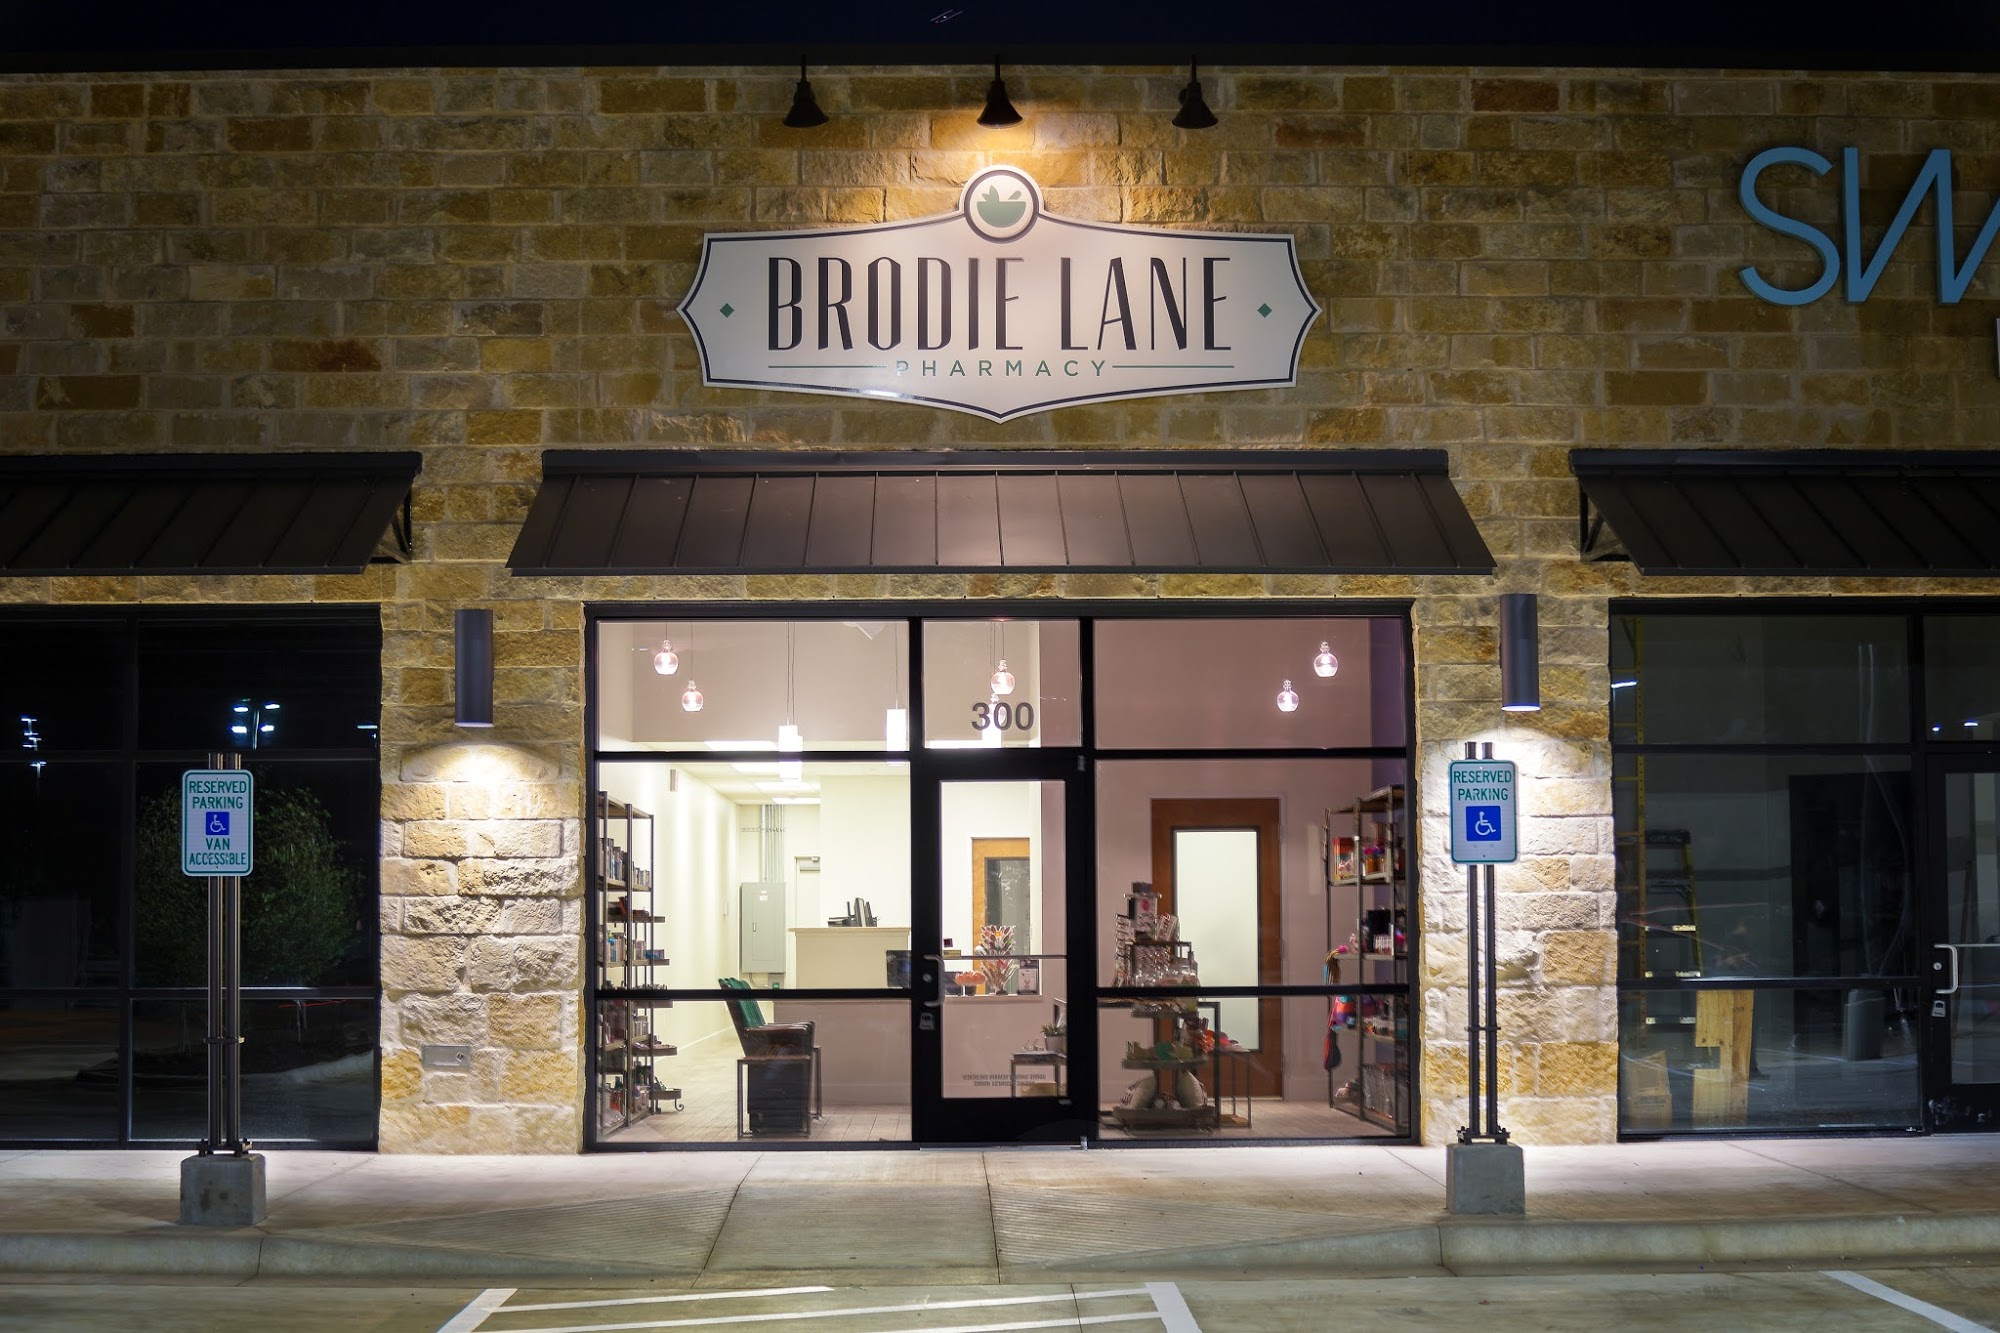 Brodie Lane Pharmacy